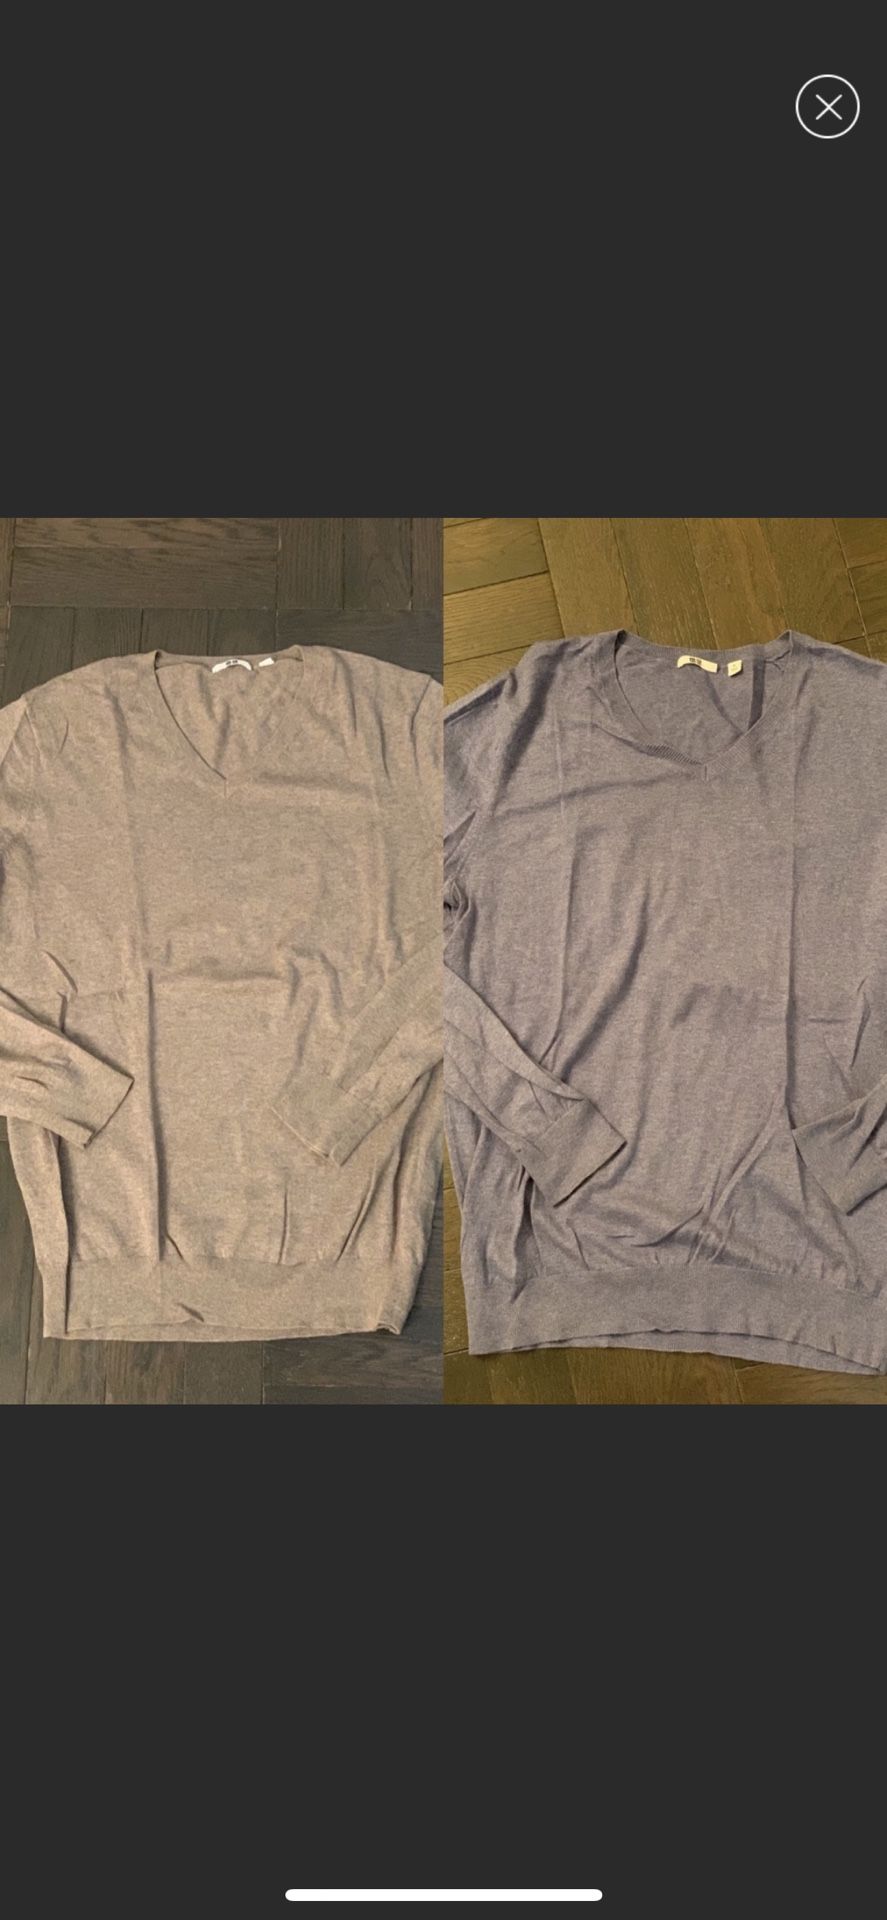 2 Men’s Uniqlo cashmere v-neck sweaters like NEW!